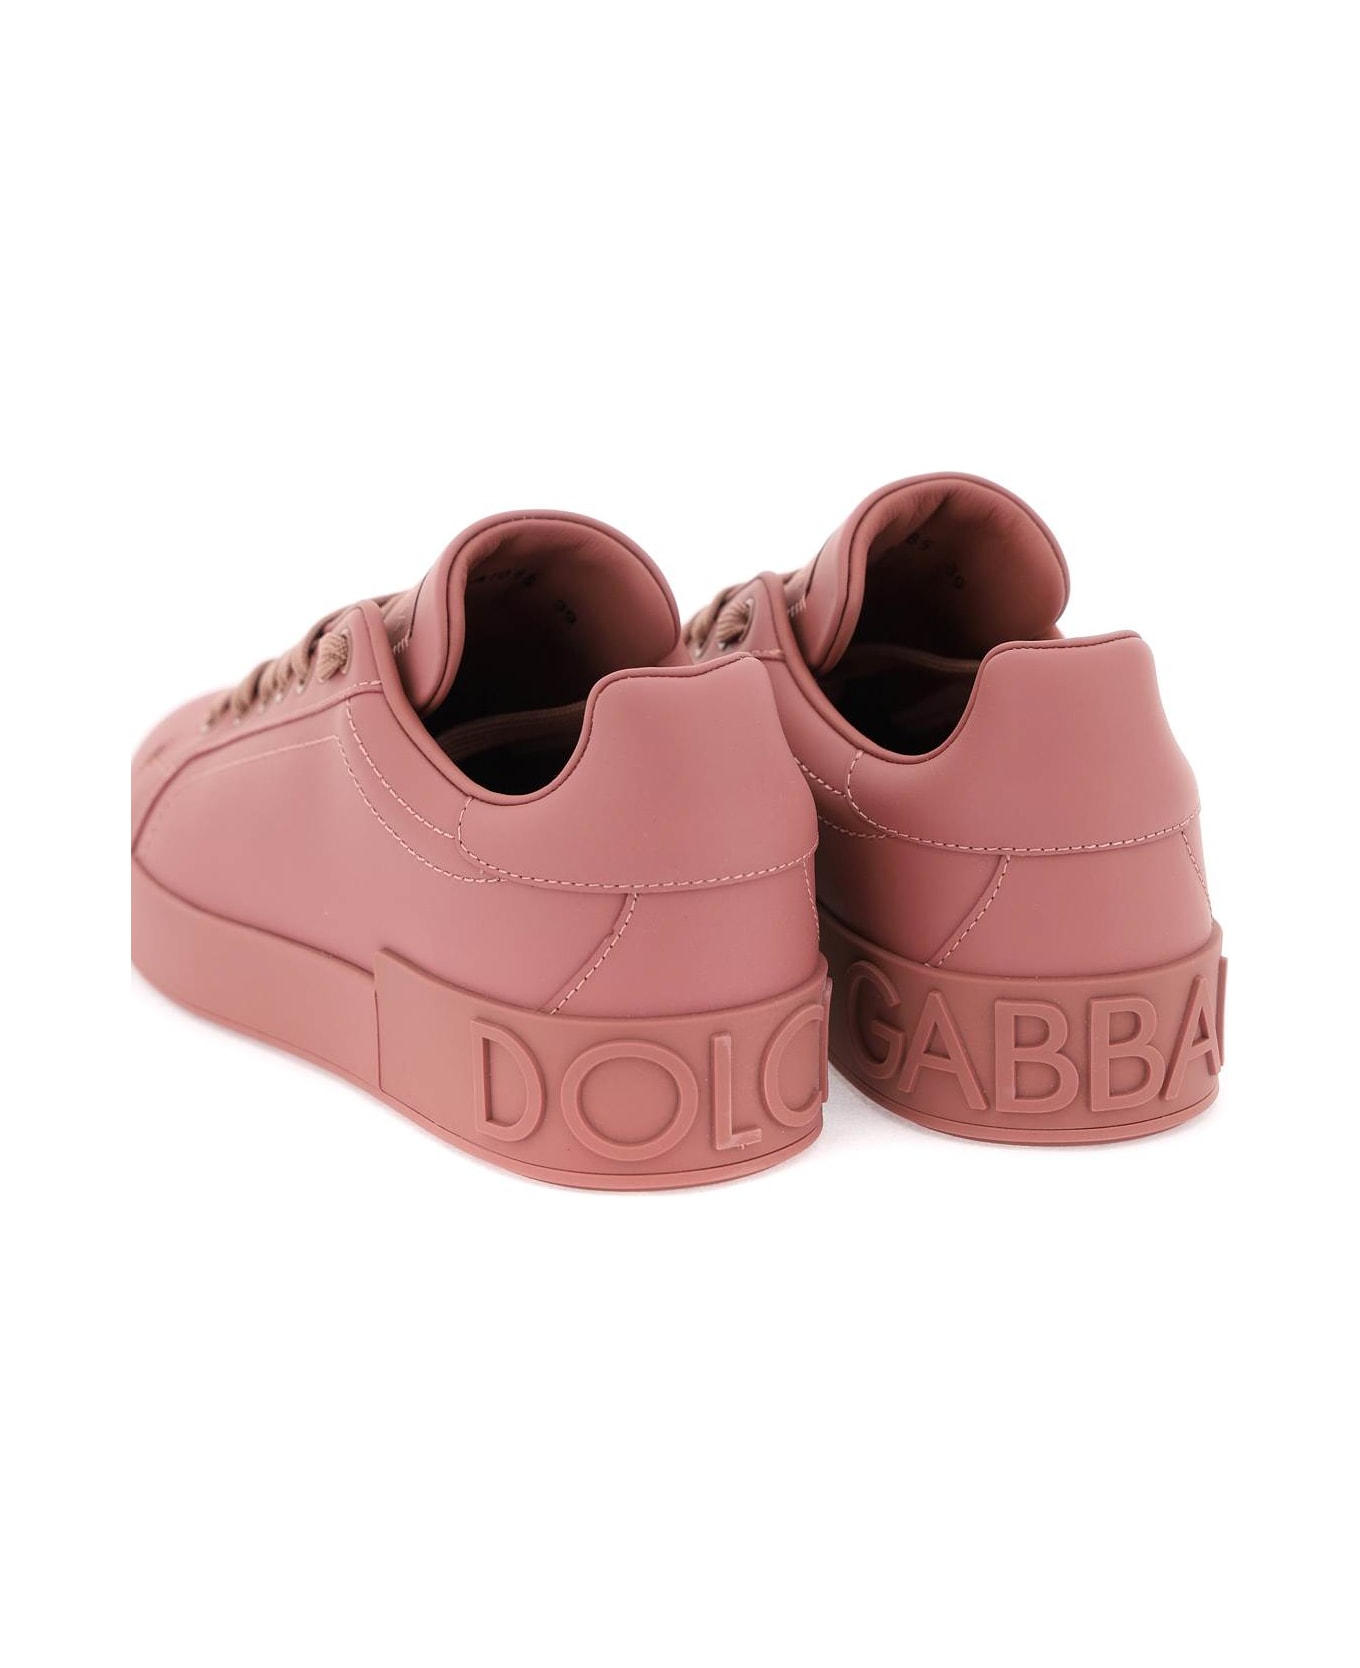 Dolce & Gabbana Portofino Leather Sneakers - Rosa antico スニーカー